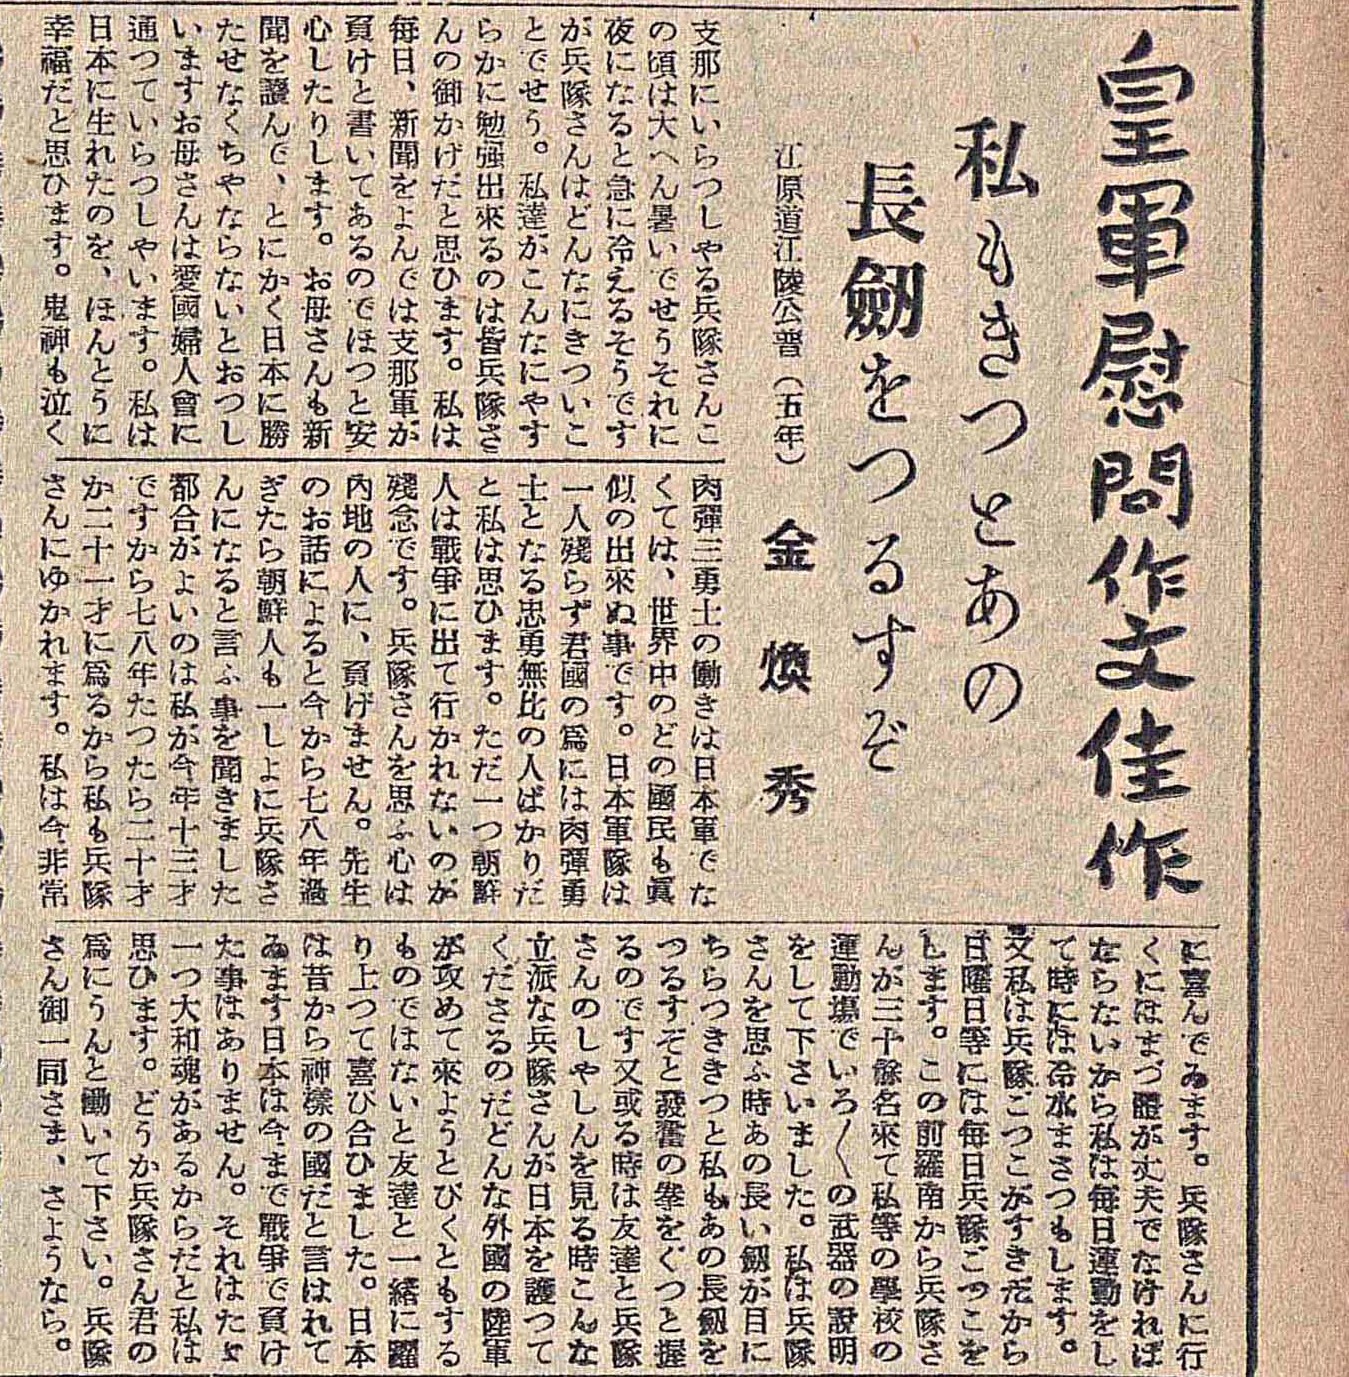 1937년 9월 21일자 매일신보에 실린 ‘황군 위문 작문 가작’. 학생이 중·일 전쟁에 나간 일본군에게 보낸 위문 편지 형식의 글이다.  이미지 출처 국립중앙도서관.